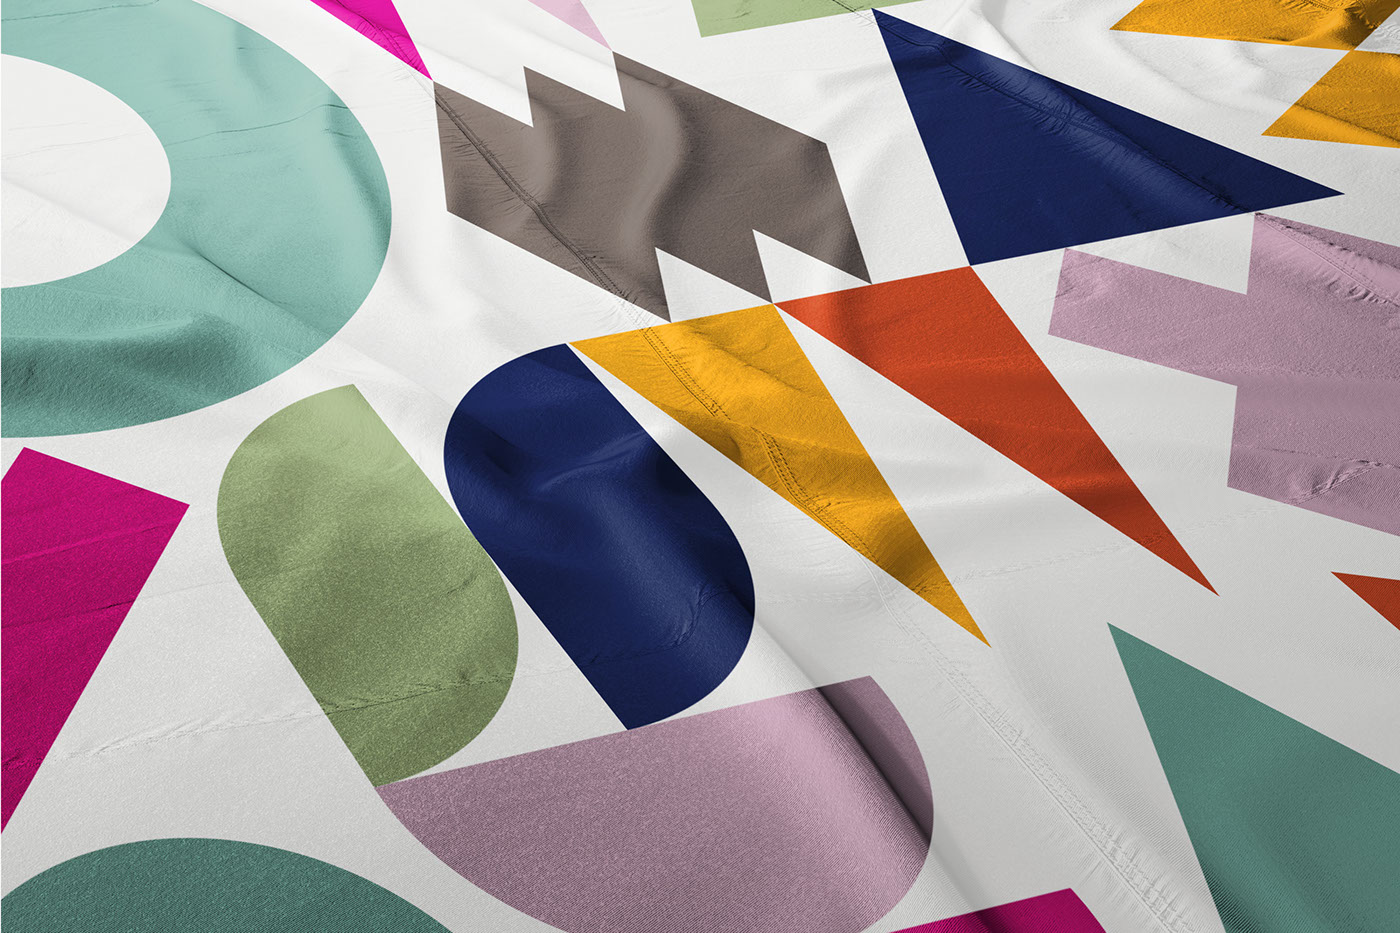 geometry branding  pattern poster festival idenity Colourful  London mepostbranding Southwark Council